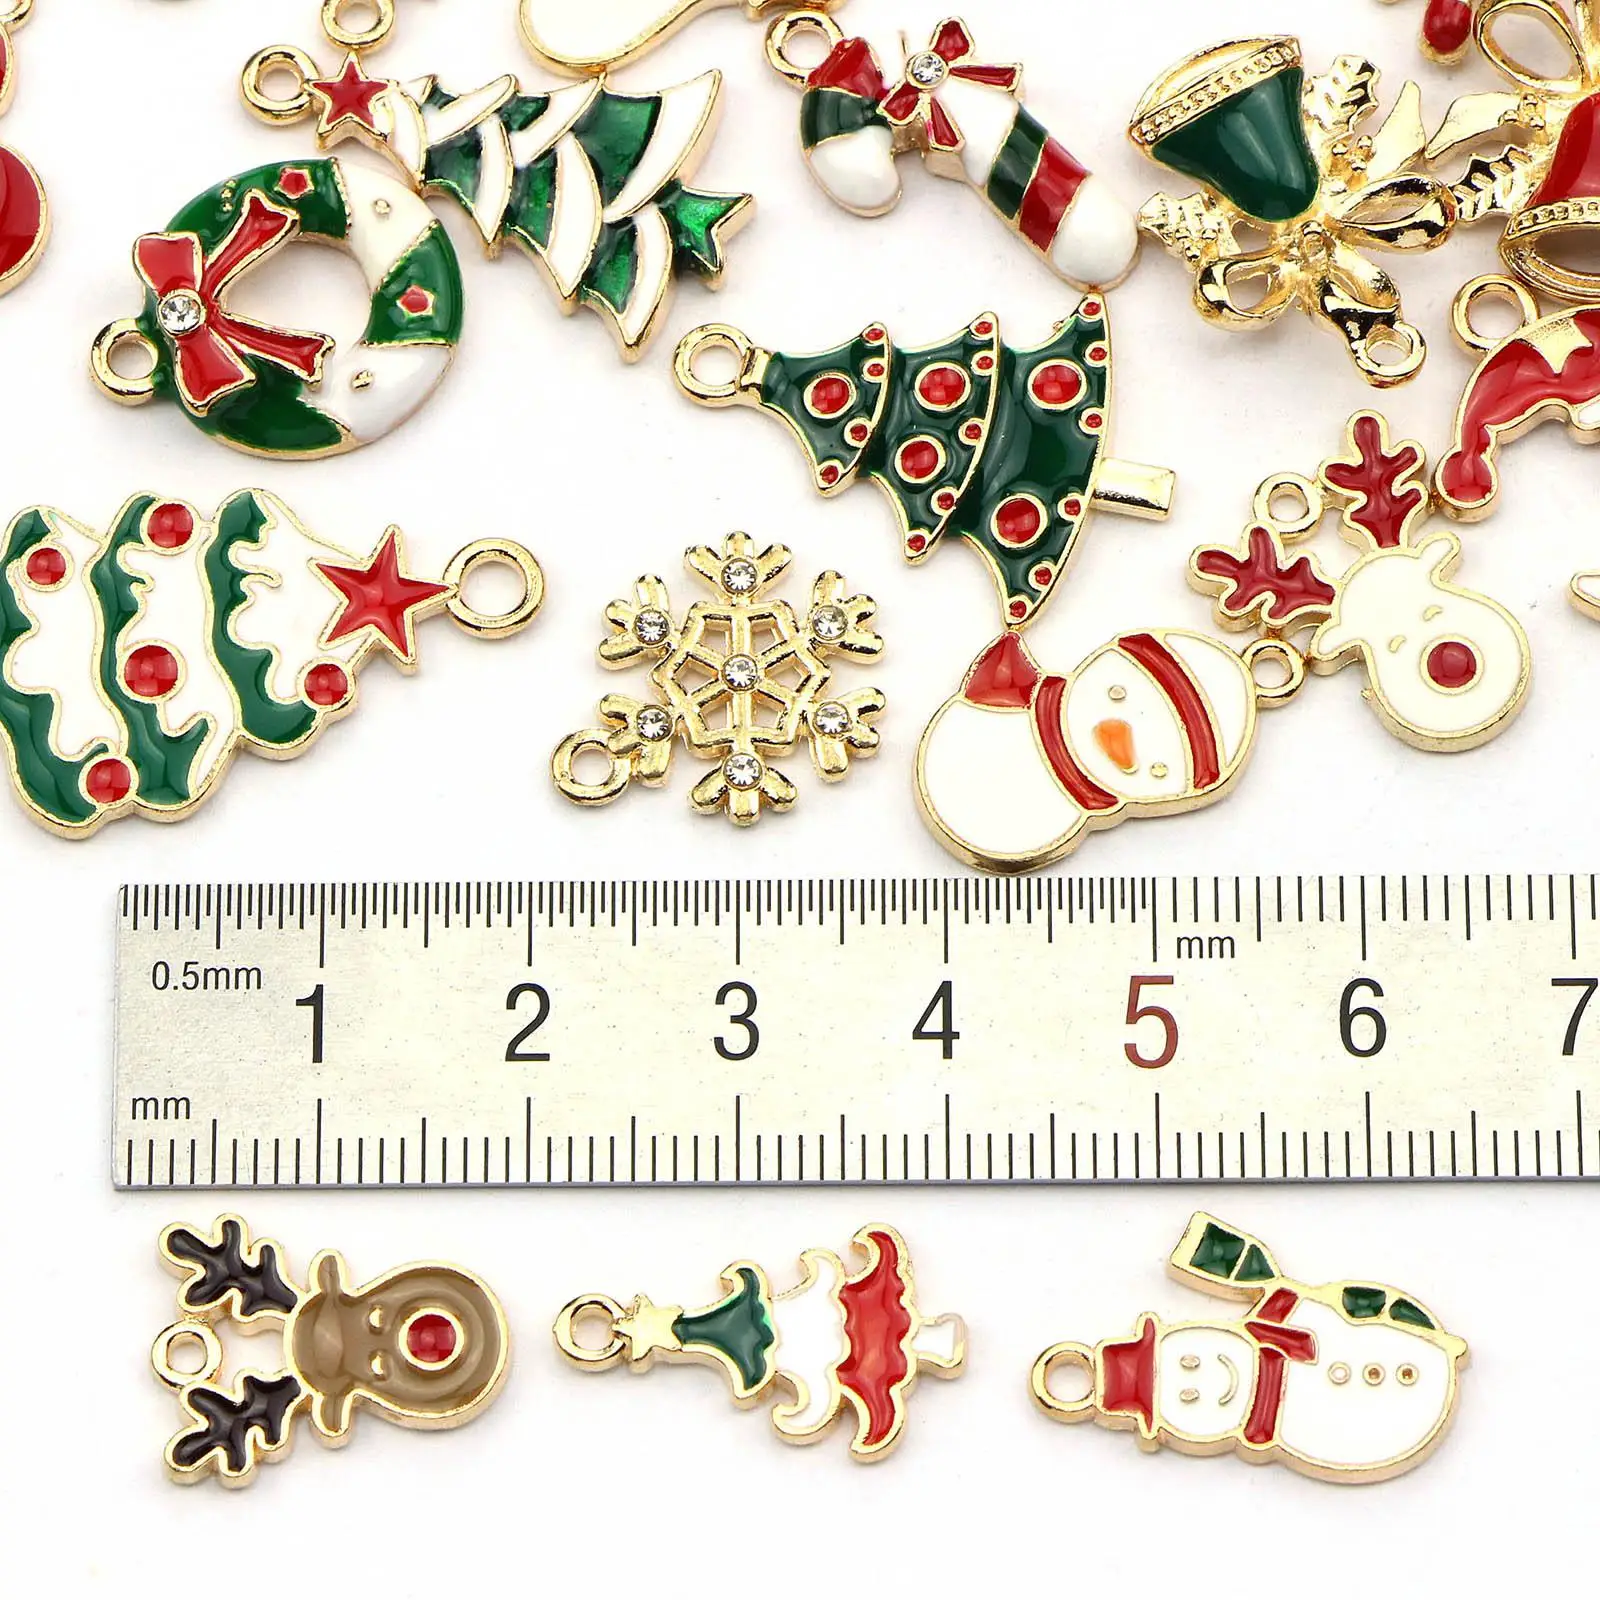 45 Pieces Santa Claus Pendants Reindeer Pendants Snowman for Gift